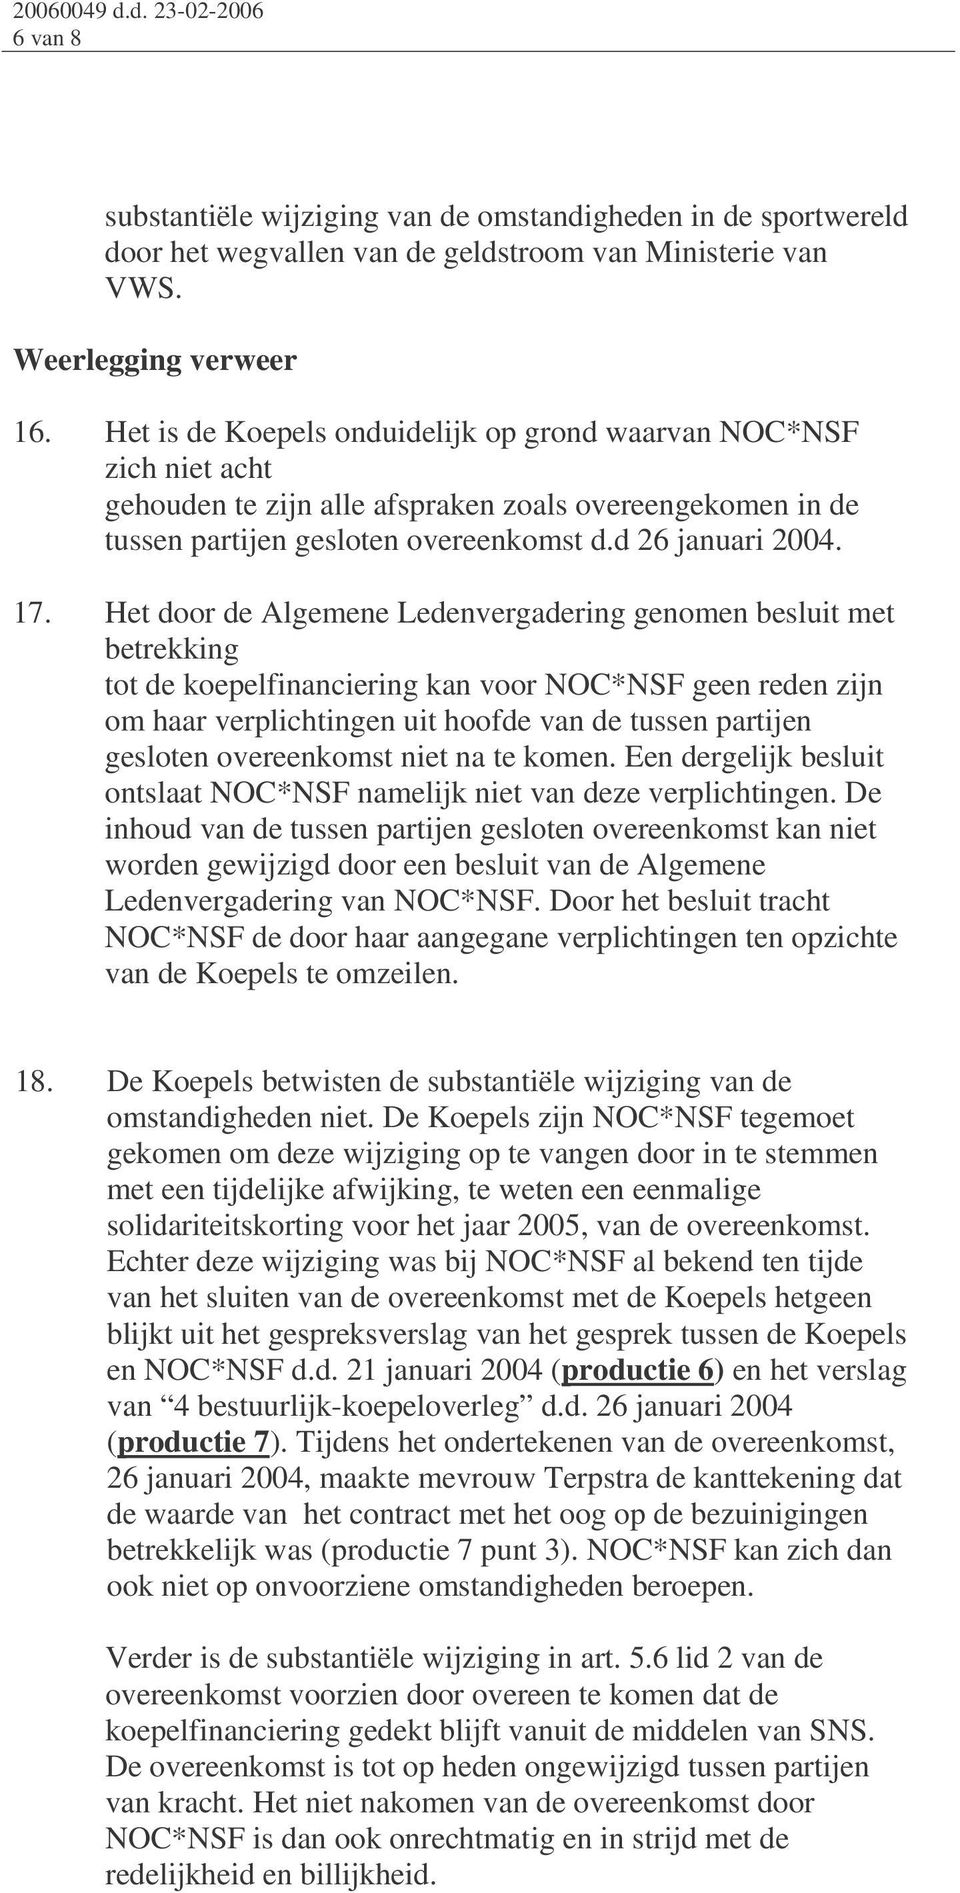 Het door de Algemene Ledenvergadering genomen besluit met betrekking tot de koepelfinanciering kan voor NOC*NSF geen reden zijn om haar verplichtingen uit hoofde van de tussen partijen gesloten